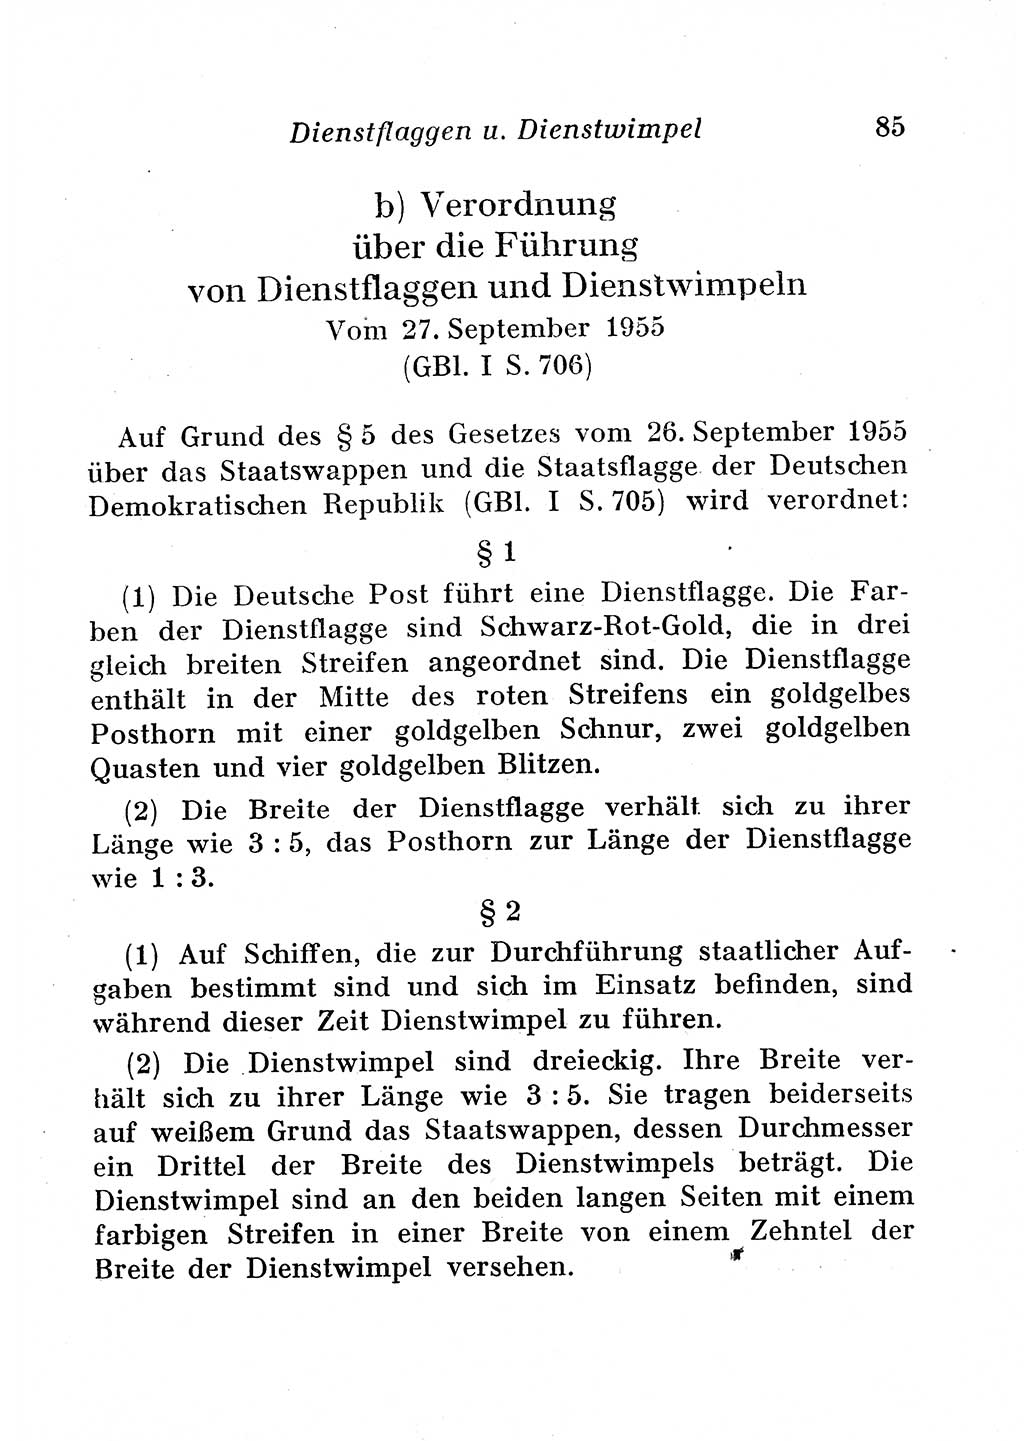 Staats- und verwaltungsrechtliche Gesetze der Deutschen Demokratischen Republik (DDR) 1958, Seite 85 (StVerwR Ges. DDR 1958, S. 85)